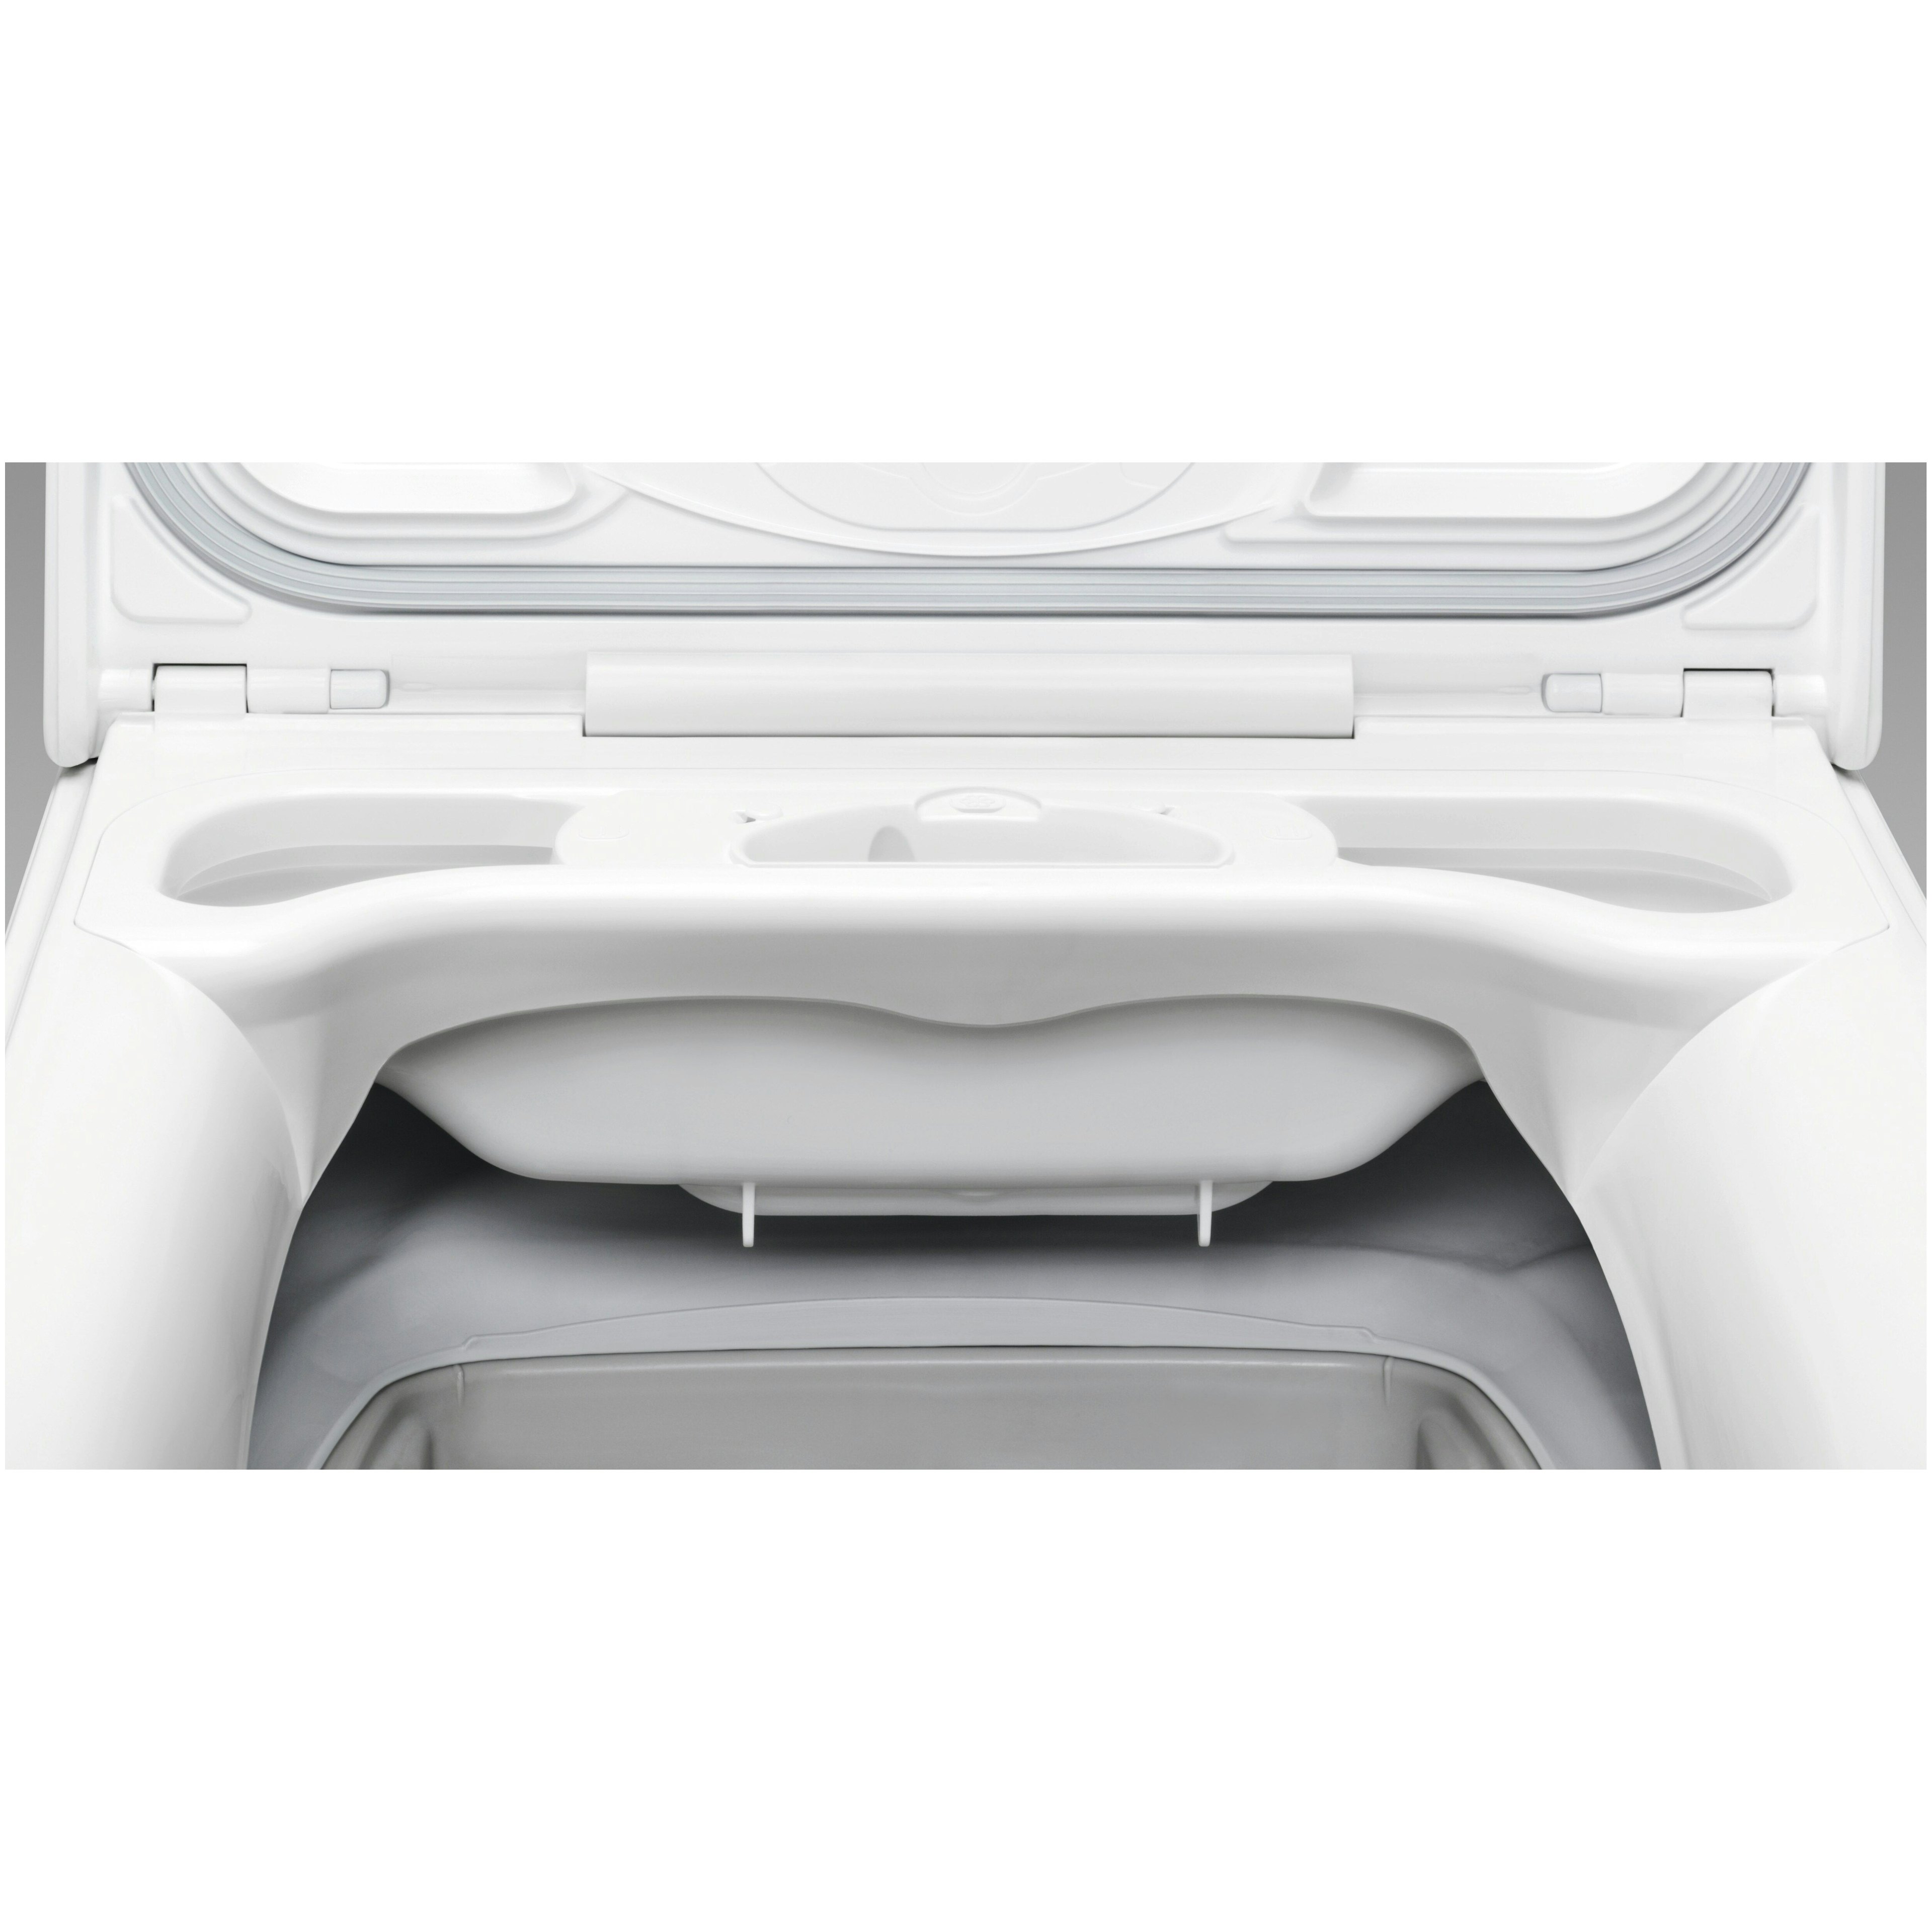 AEG wasmachine  LTR6162 afbeelding 4